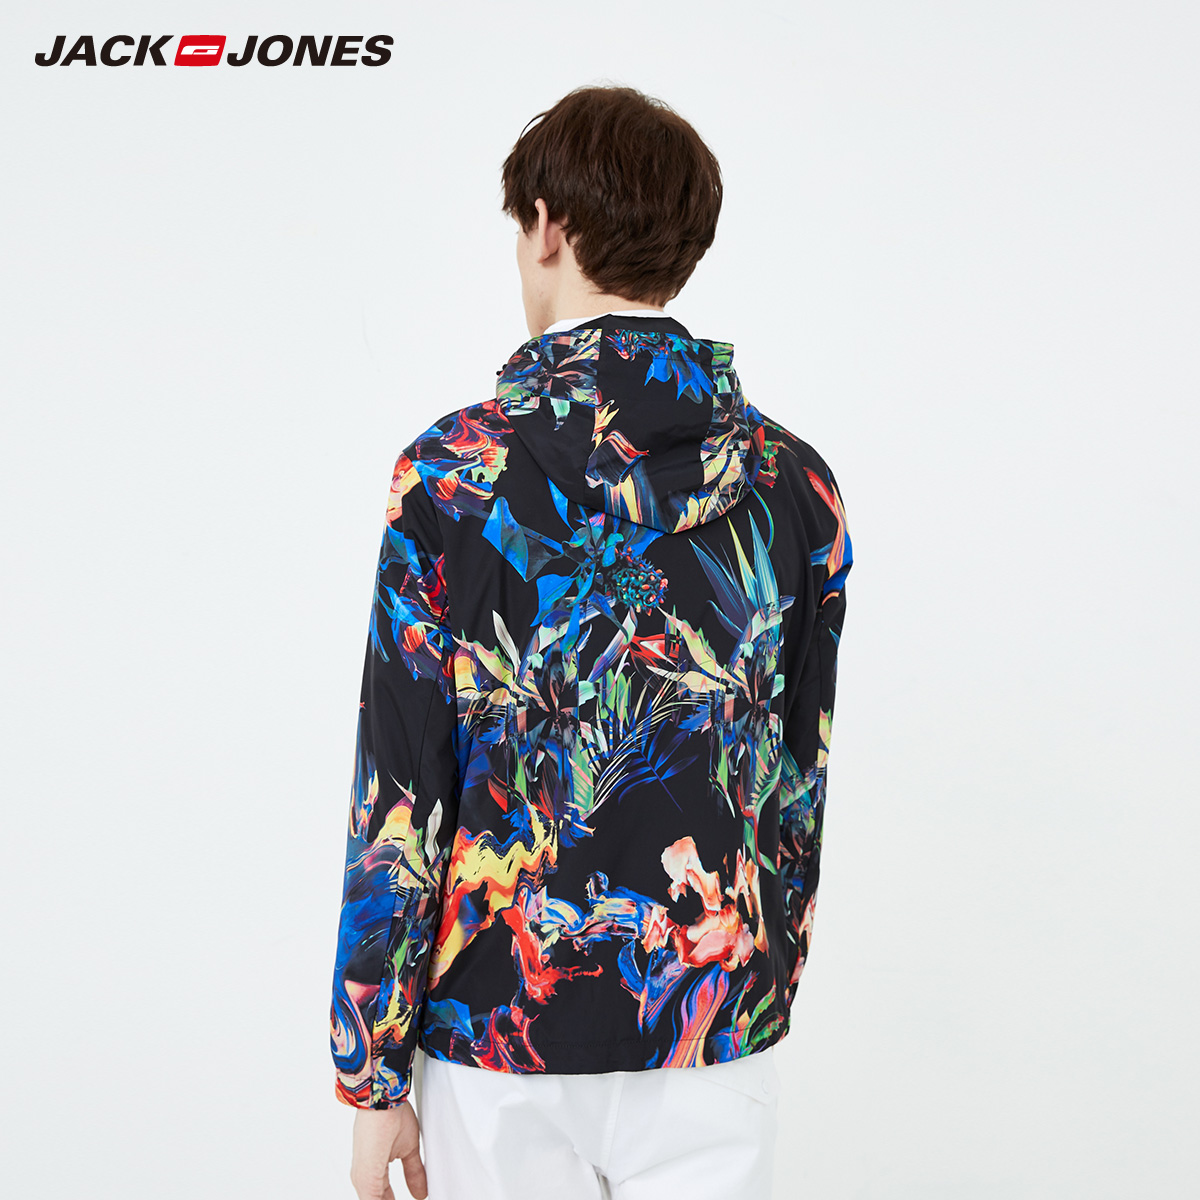 Jack Jones xu hướng đẹp trai gió chống jacket phun nước mùa xuân con người ngụy trang